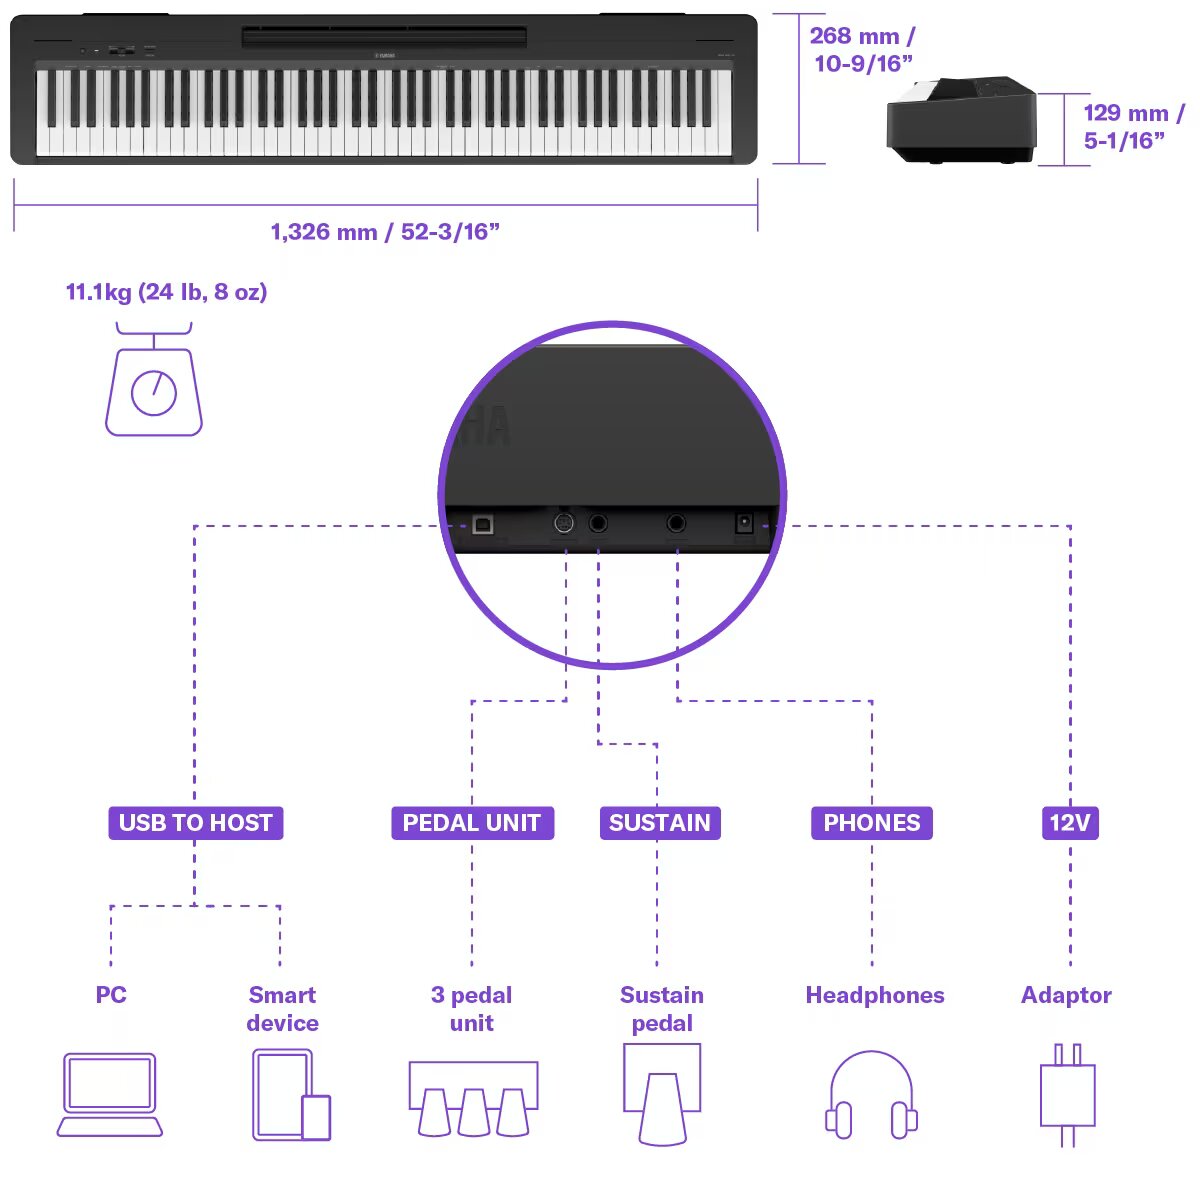 ویژگی های اصلی پیانو دیجیتال Yamaha p145